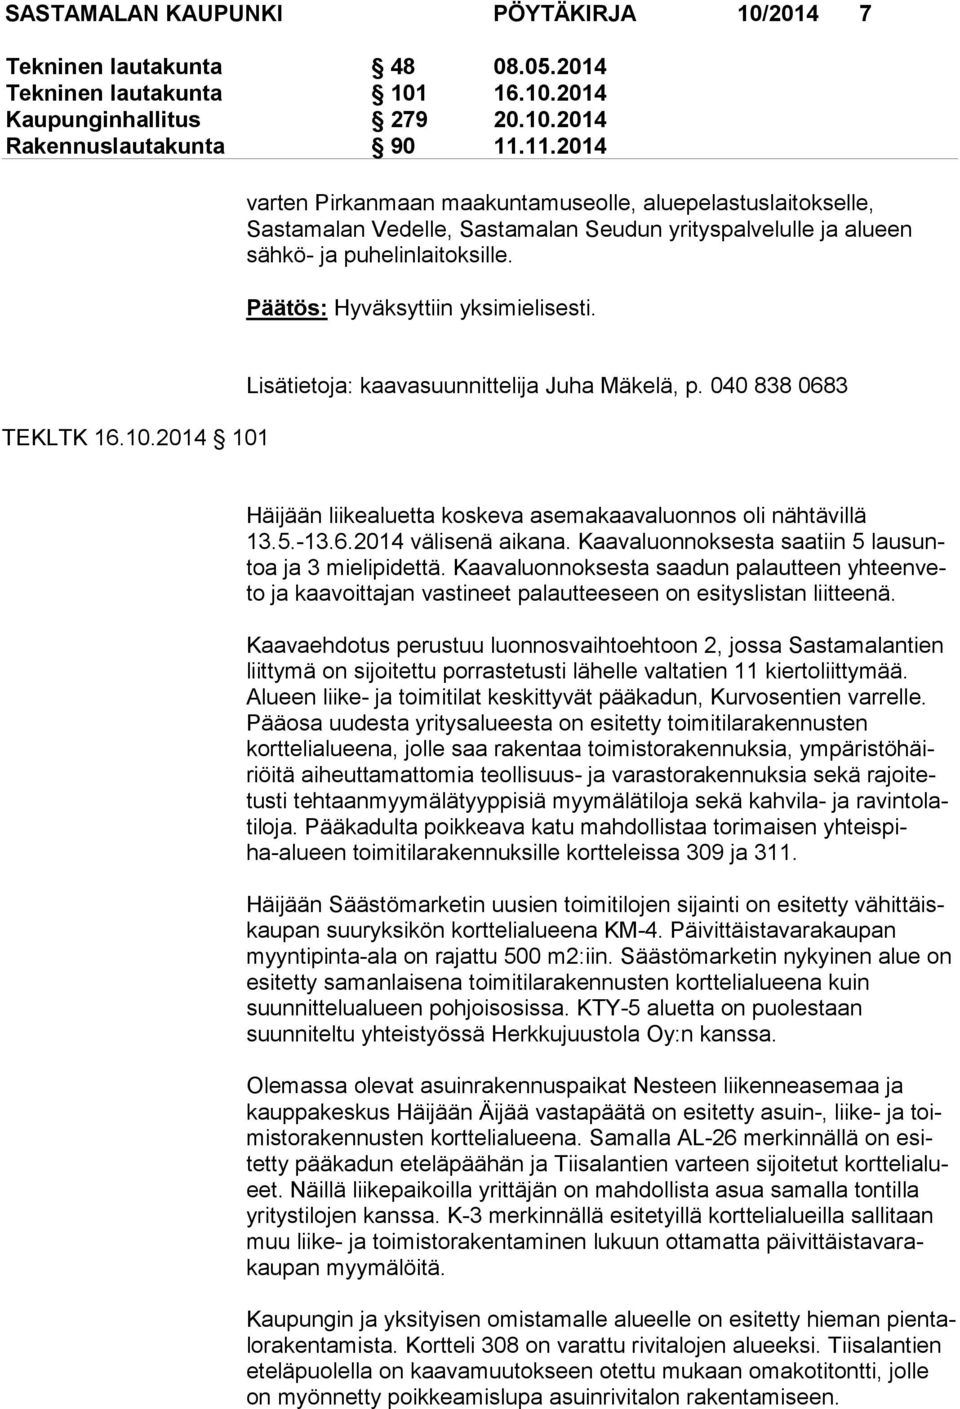 TEKLTK 16.10.2014 101 Lisätietoja: kaavasuunnittelija Juha Mäkelä, p. 040 838 0683 Häijään liikealuetta koskeva asemakaavaluonnos oli nähtävillä 13.5.-13.6.2014 välisenä aikana.